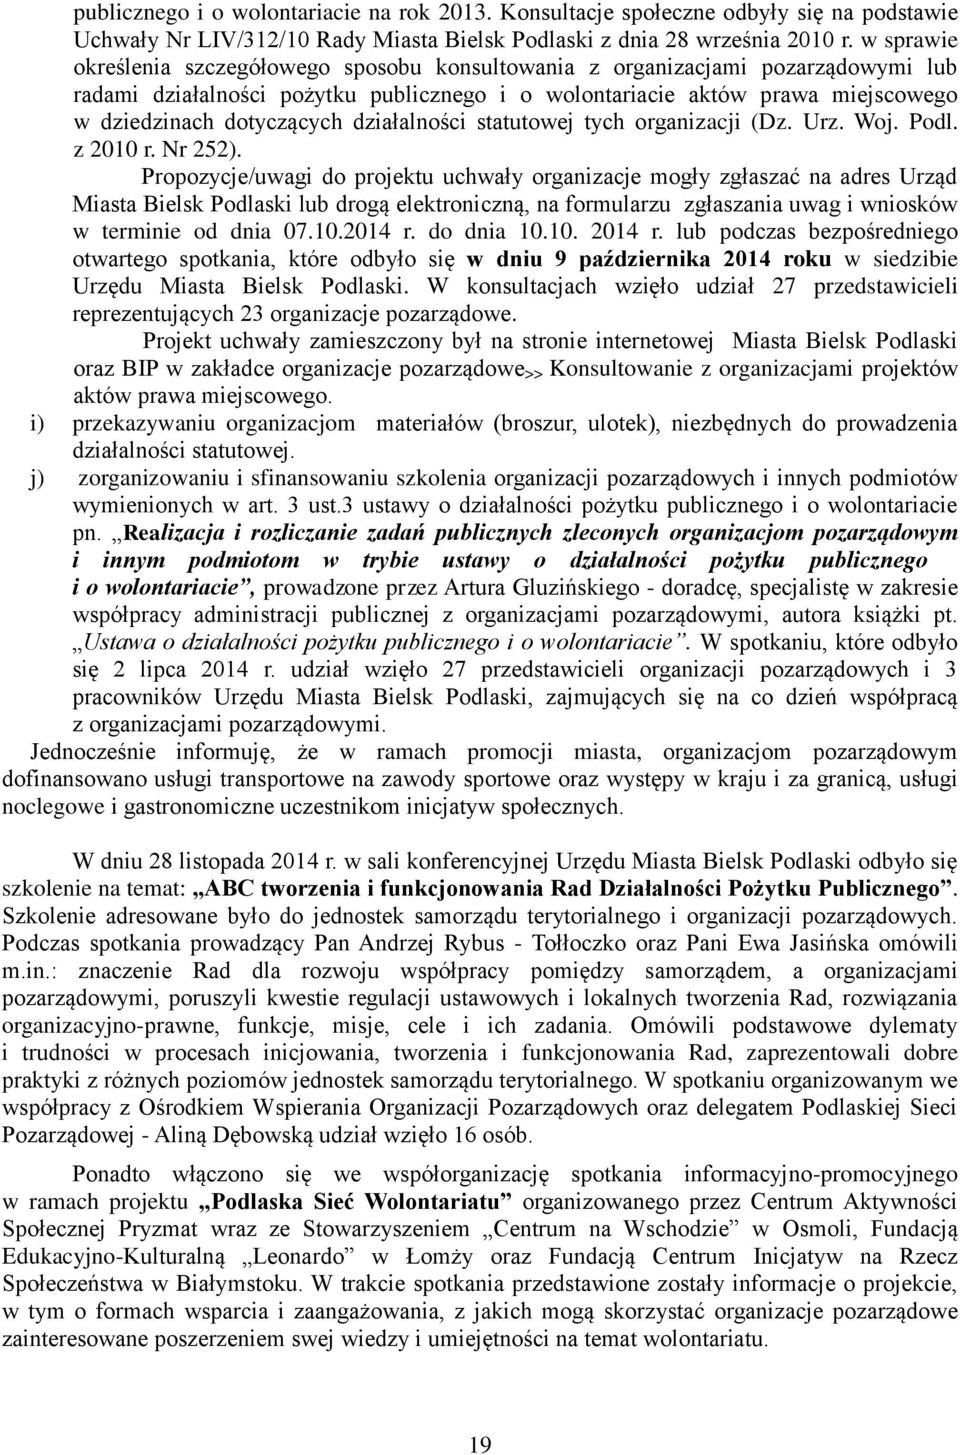 działalności statutowej tych organizacji (Dz. Urz. Woj. Podl. z 2010 r. Nr 252).